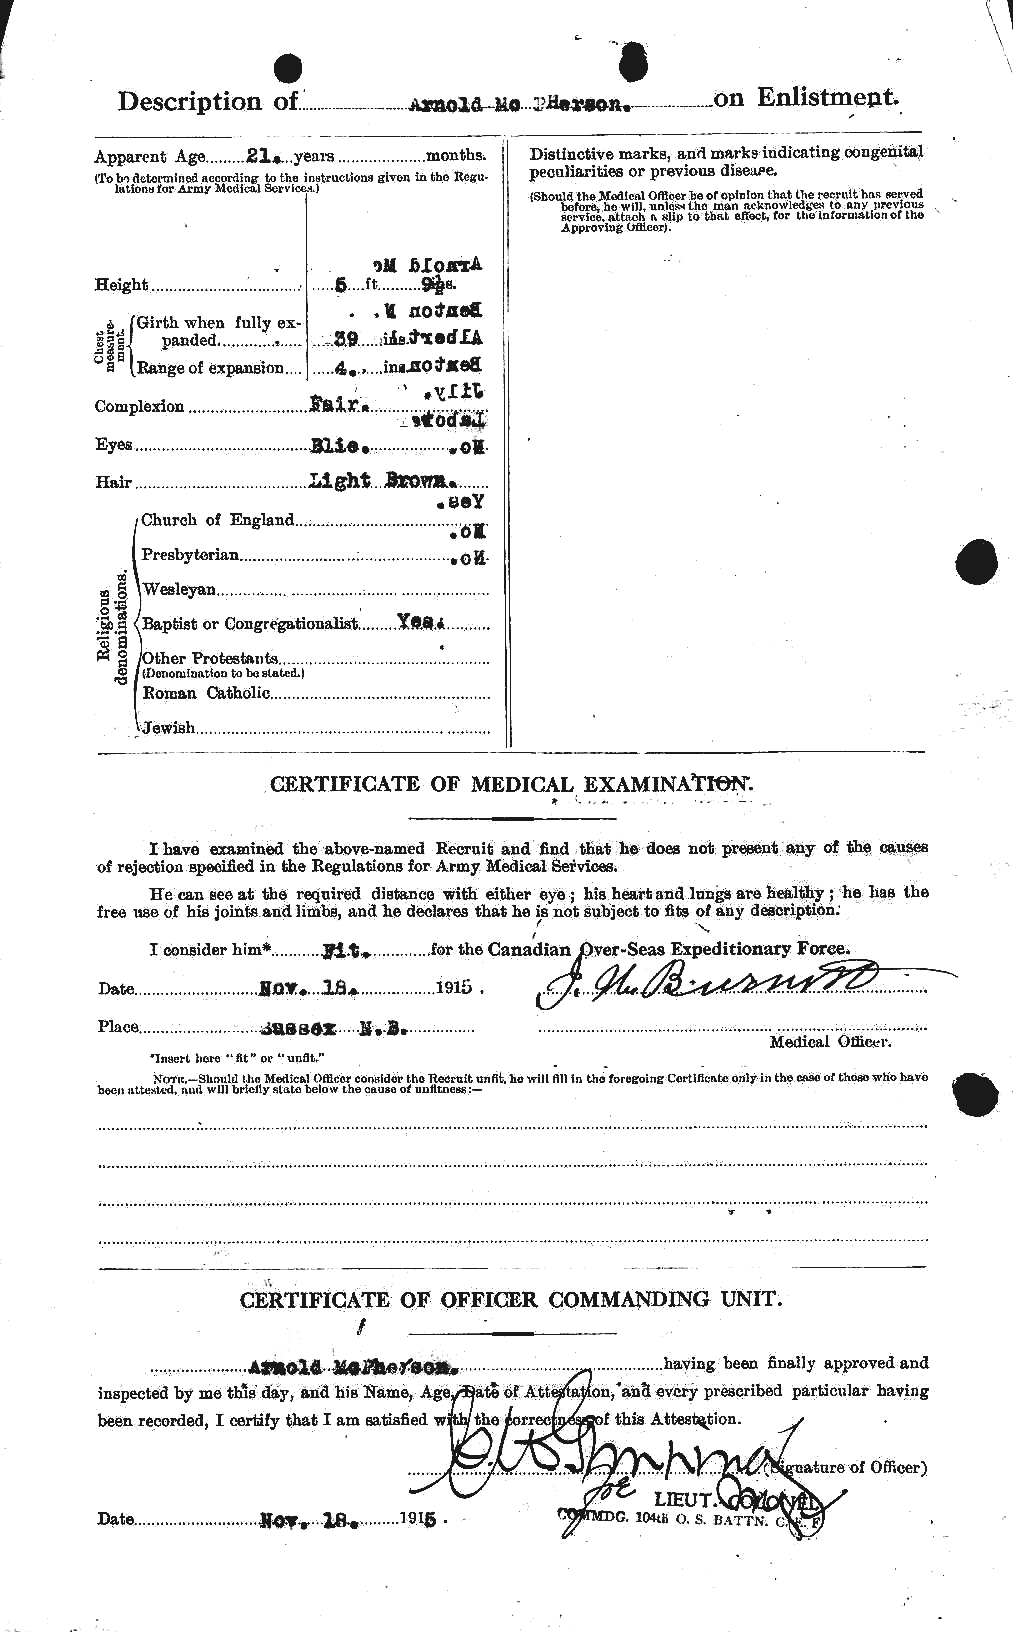 Dossiers du Personnel de la Première Guerre mondiale - CEC 541400b